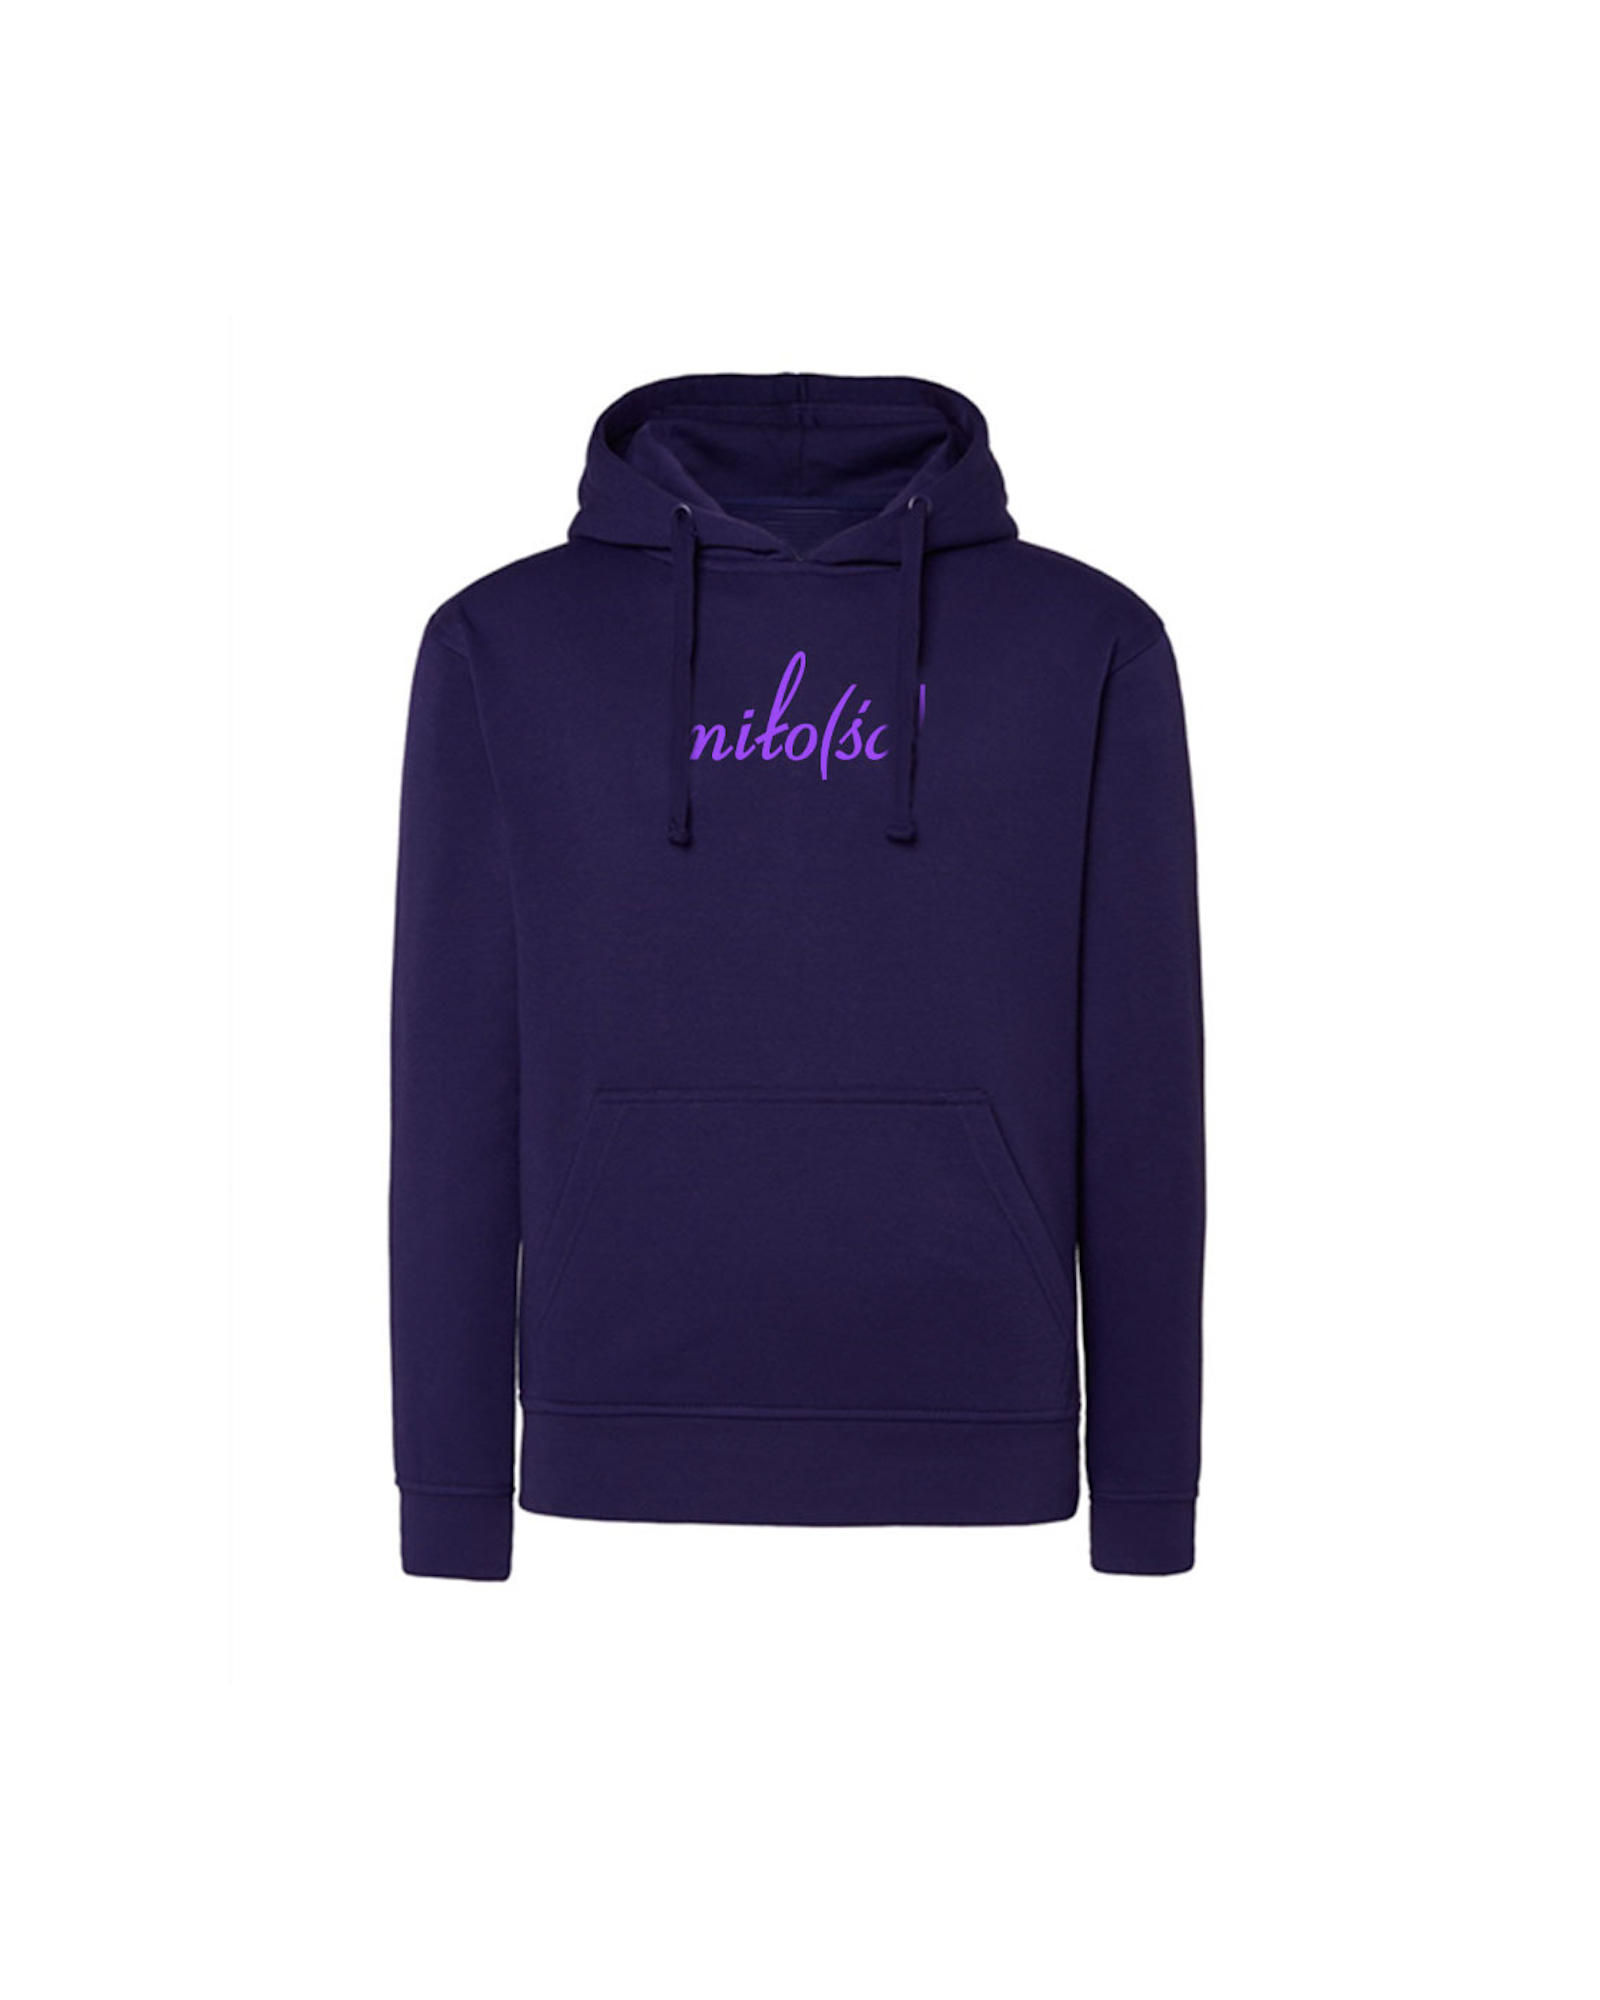 New! Original hoodie fioletowa z fioletowym haftem